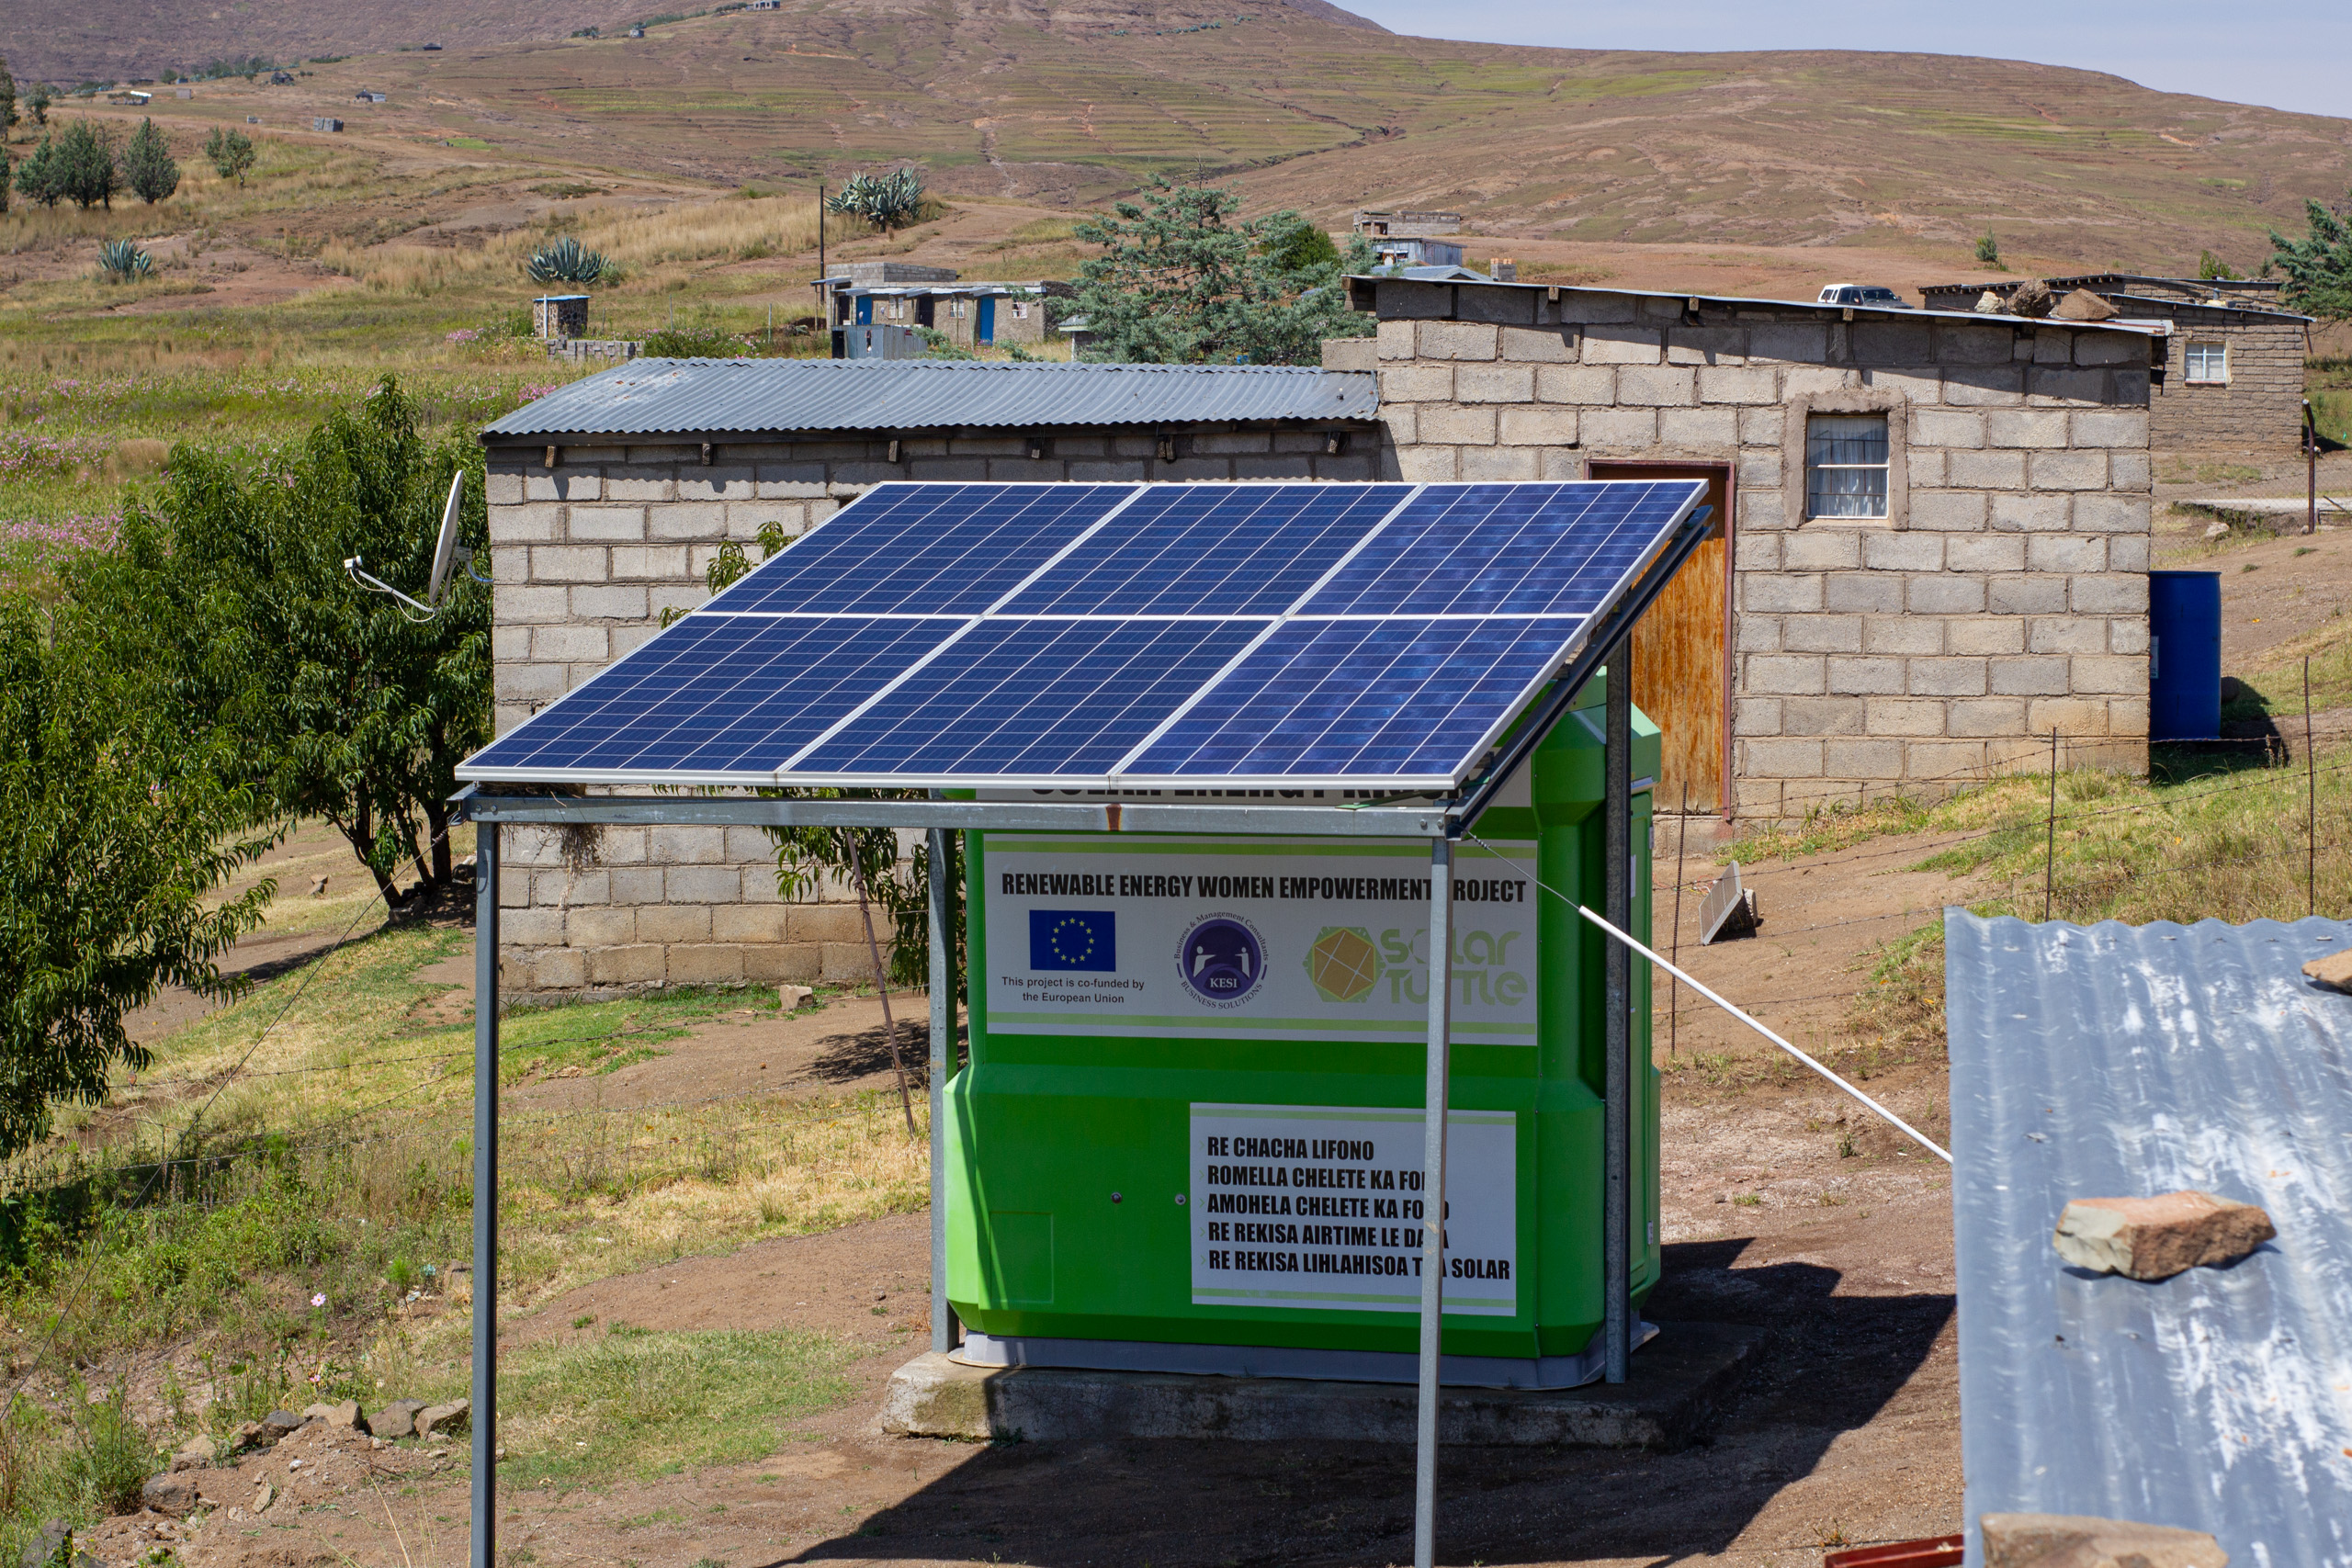 The solar kiosks powering Lesotho's rural communities